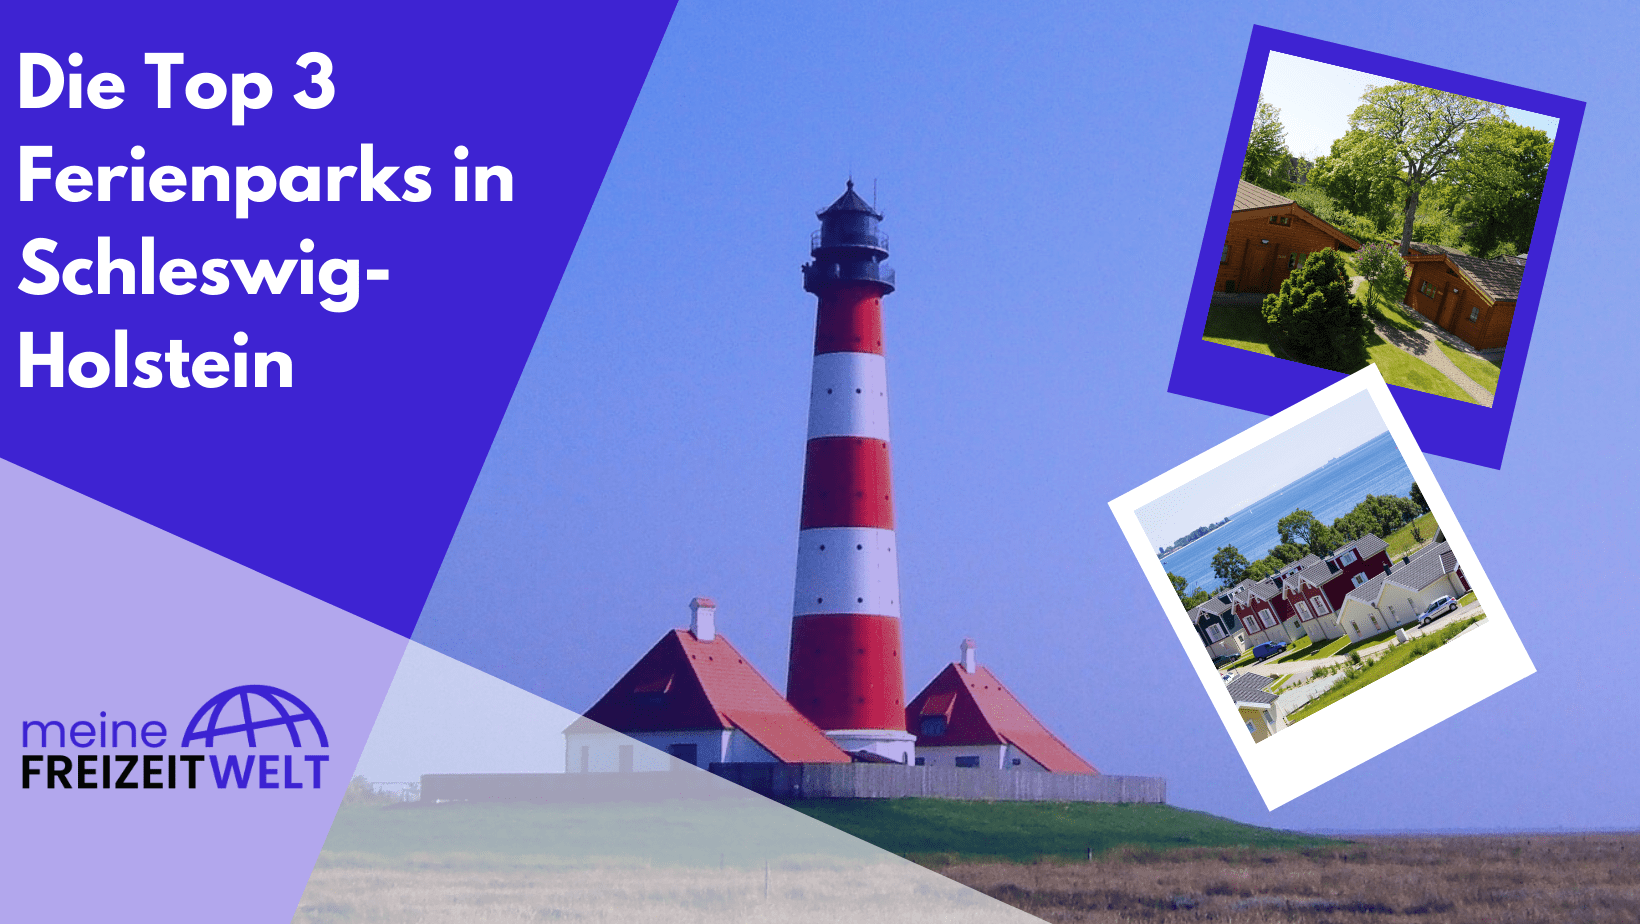 Die Top 3 Ferienparks in Schleswig-Holstein